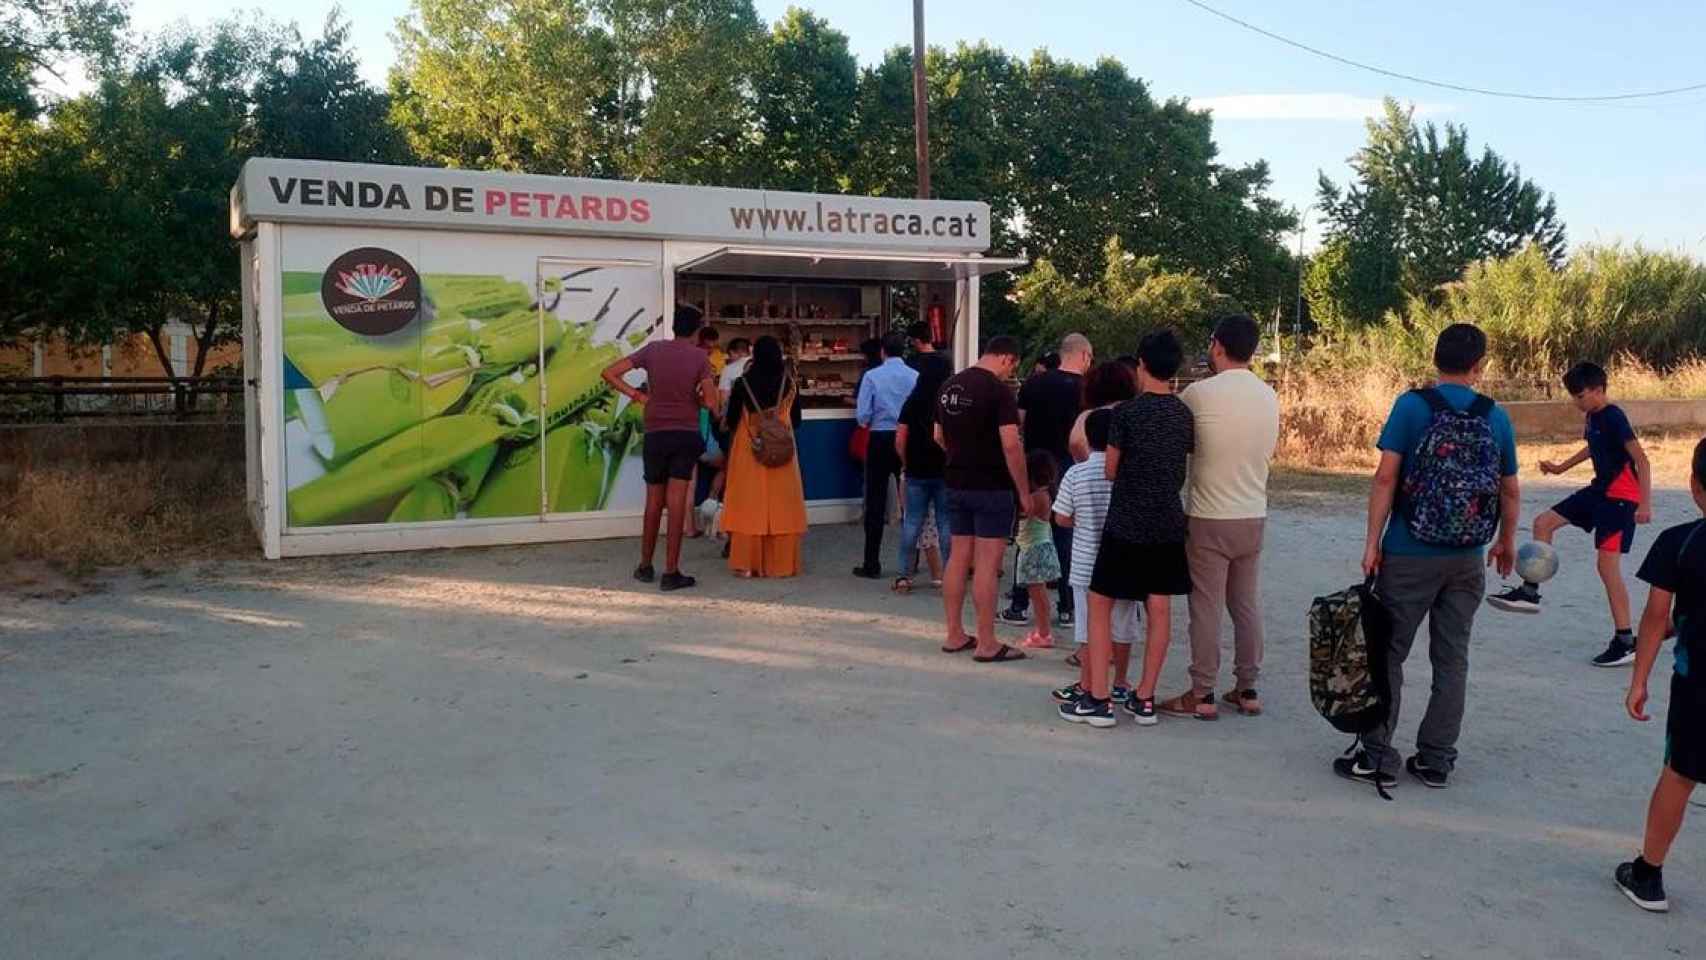 Varias personas hacen cola en una caseta de venta de petardos en Cataluña con motivo de Sant Joan / EP